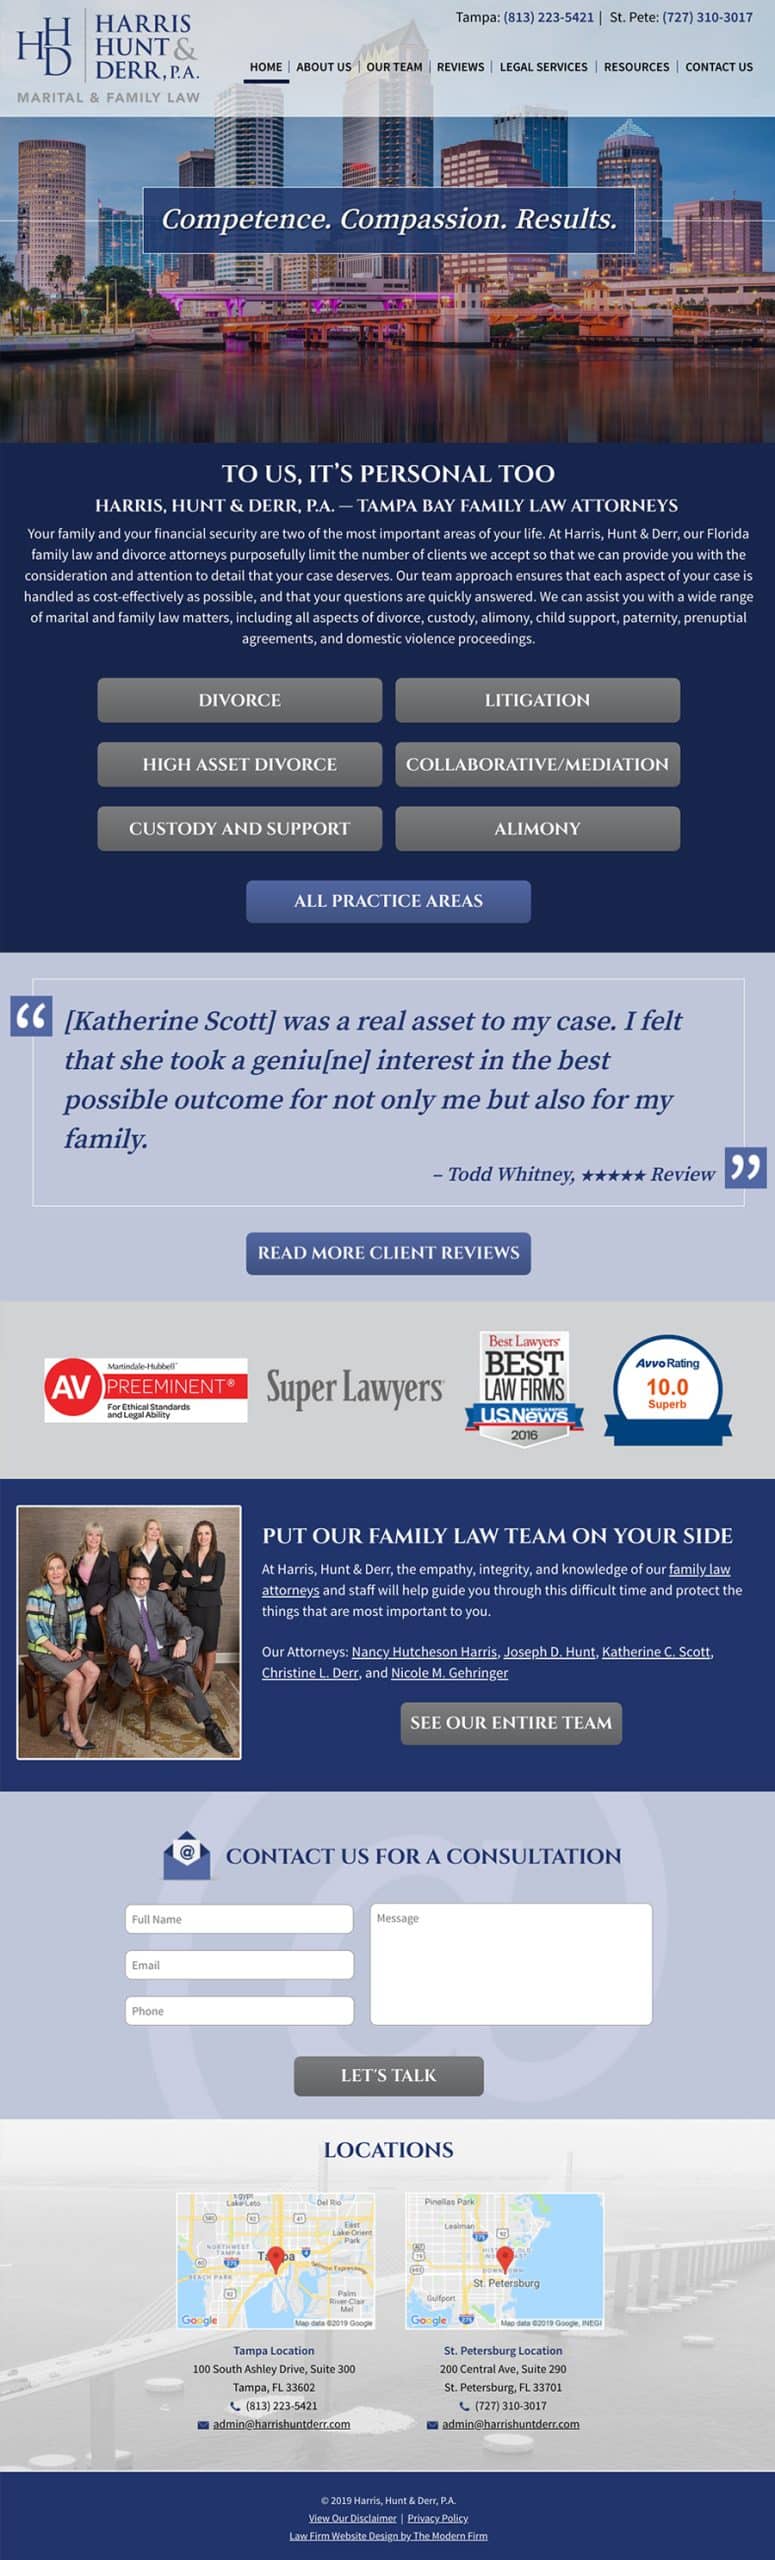 Law Firm Website Design for Harris, Hunt & Derr, P.A.